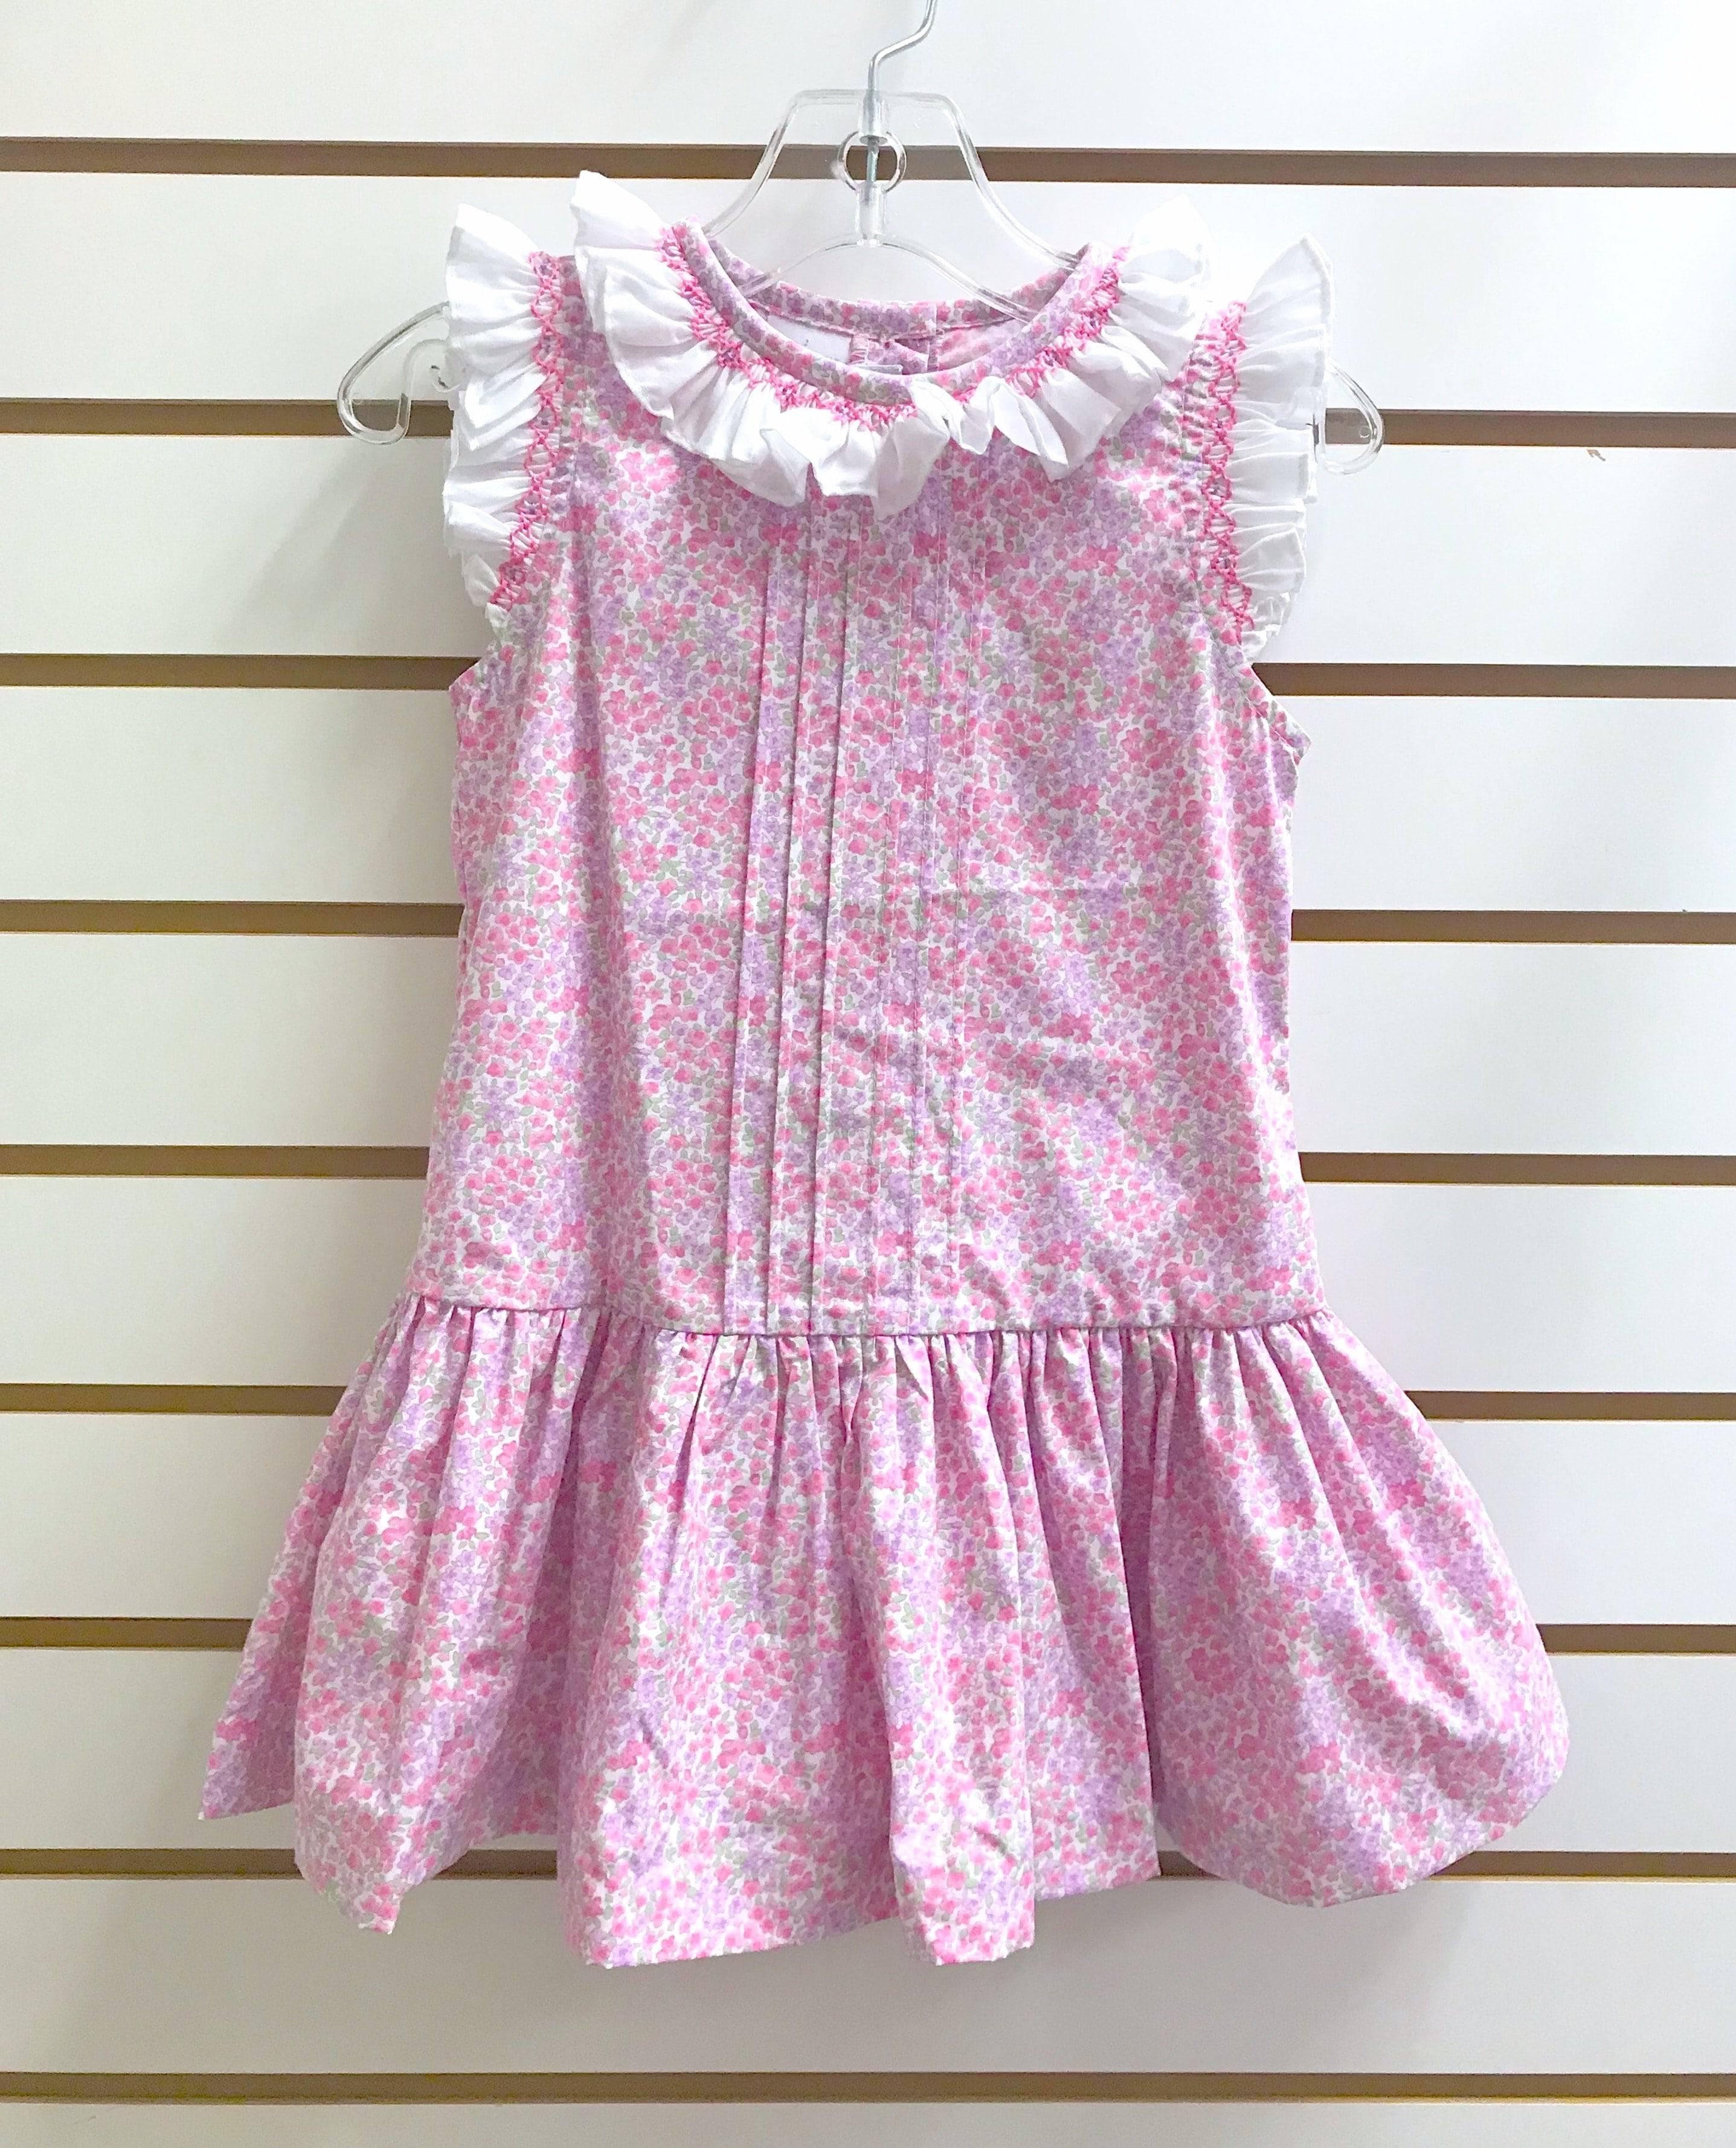 Vive La Fete - Vive La Fete Floral Print Dress - Little Miss Muffin Children & Home